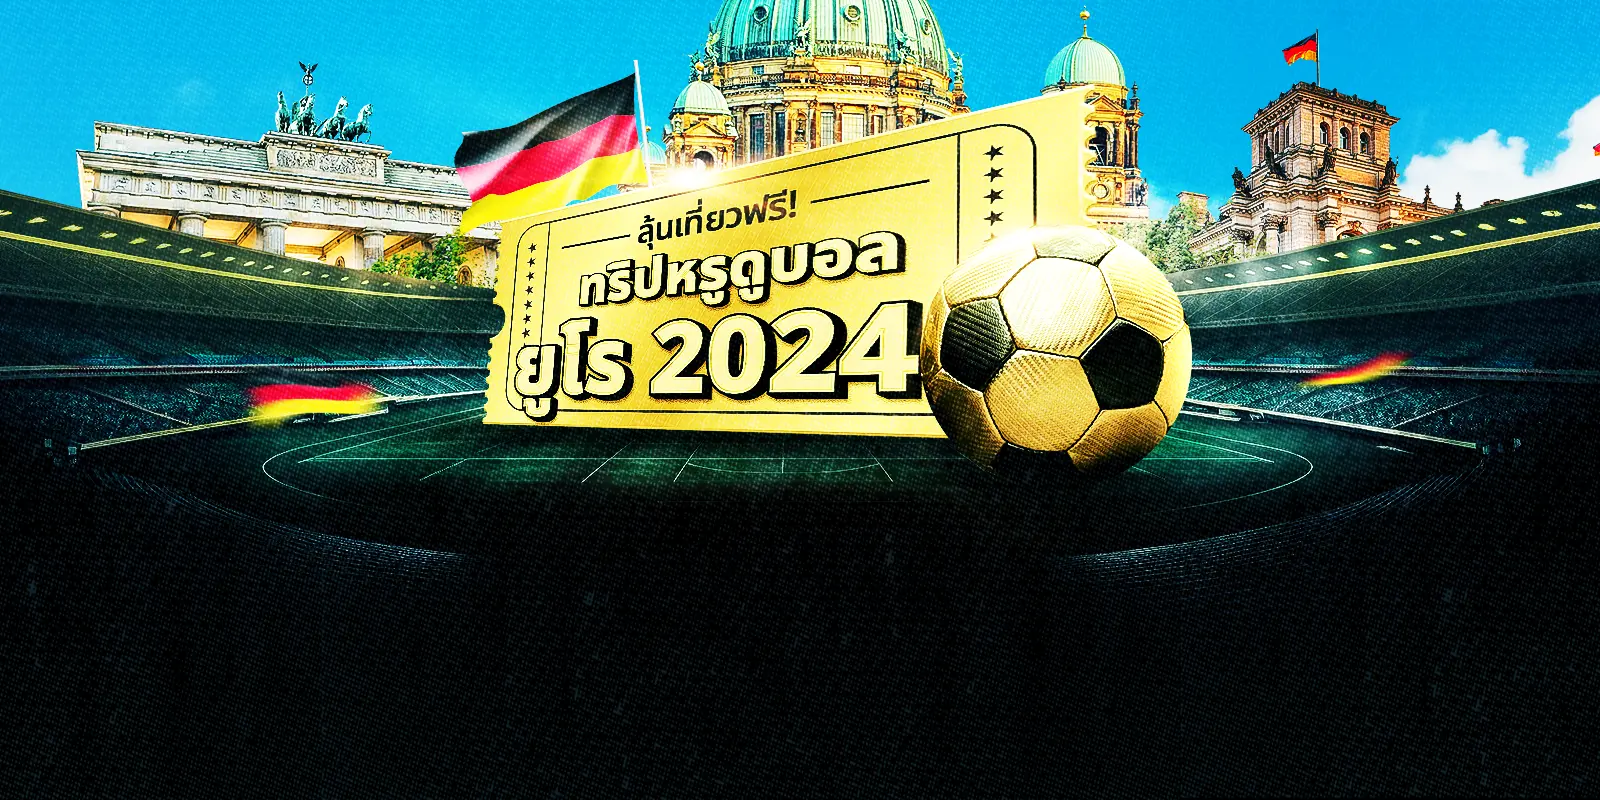 ลุ้นทริปหรู พาดูบอลยูโร 2024 ถึงเยอรมนี!